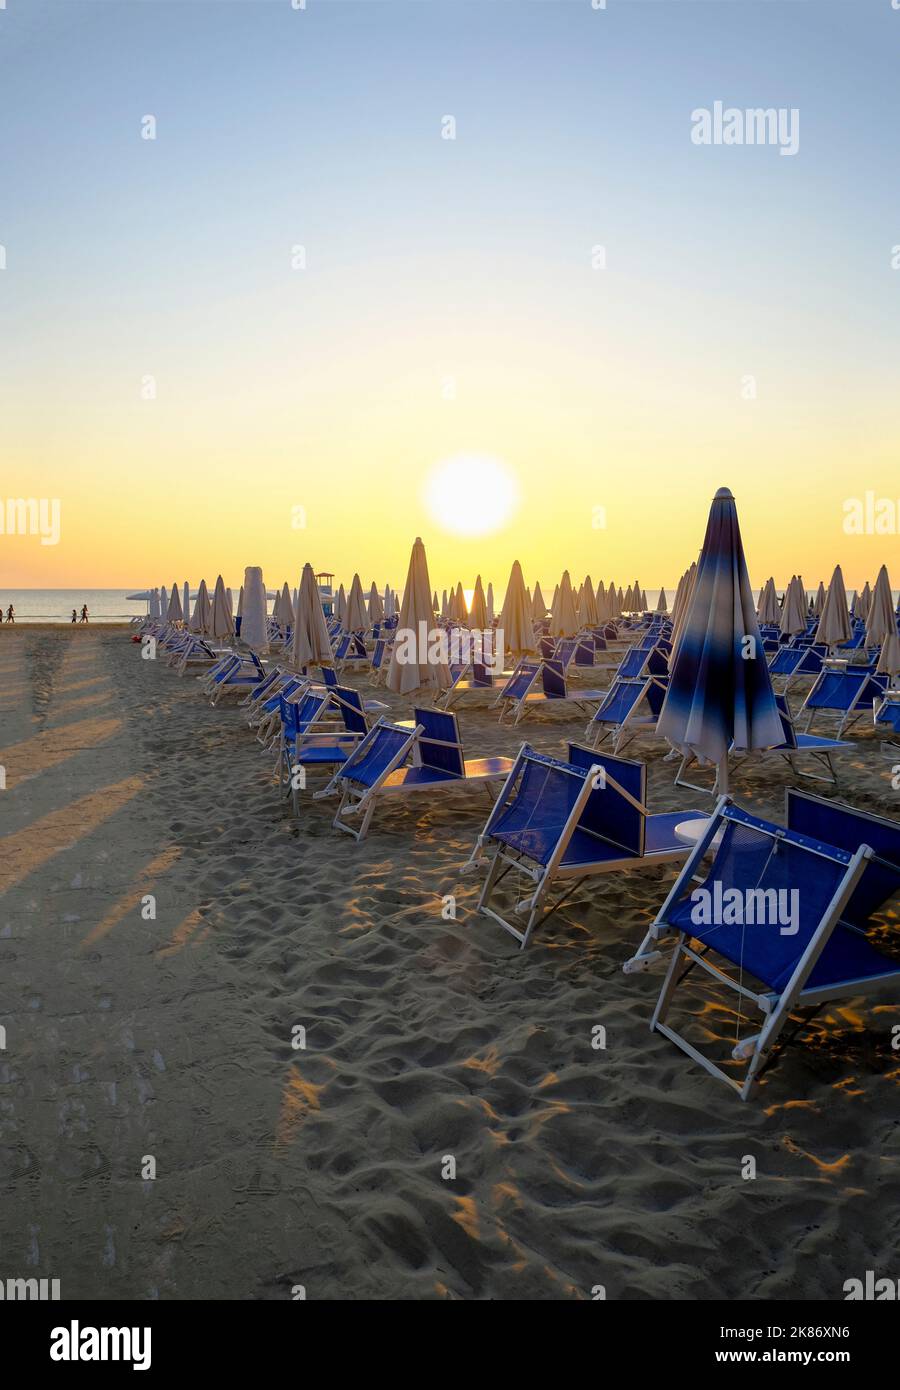 Sonnenschirme und Sonnenliegen am Strand über dem Sonnenaufgangshimmel. Weg auf dem Sand zum Strand. Sommerurlaub Hintergrund. Senigallia, Italien Stockfoto